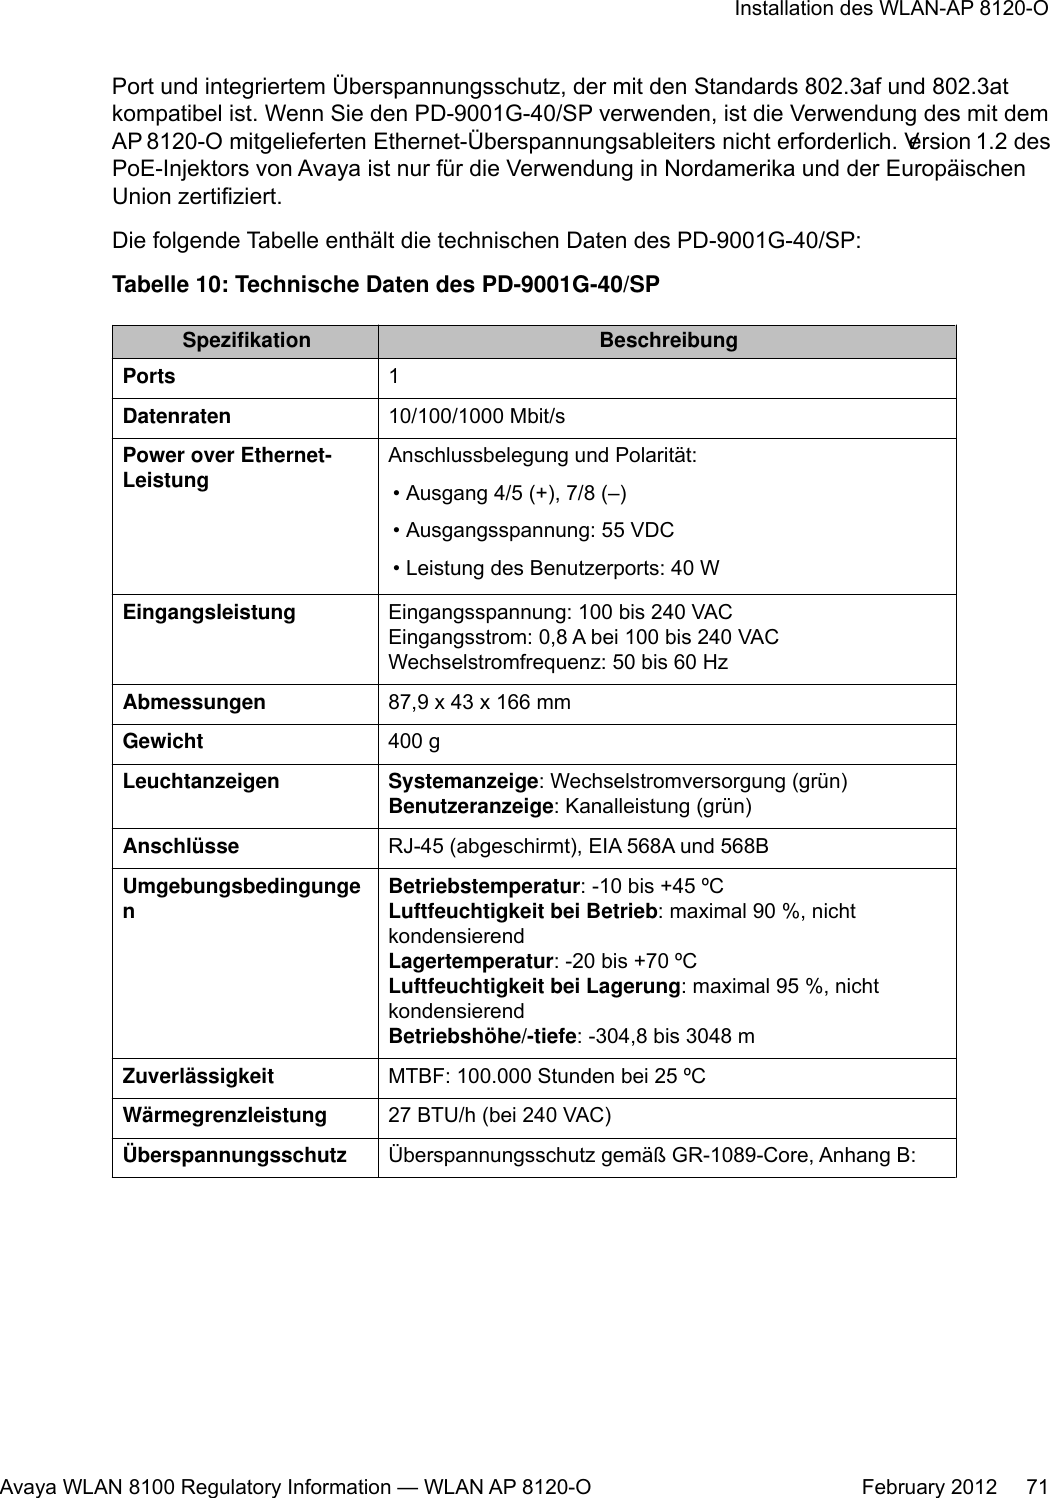 Port und integriertem Überspannungsschutz, der mit den Standards 802.3af und 802.3atkompatibel ist. Wenn Sie den PD-9001G-40/SP verwenden, ist die Verwendung des mit demAP 8120-O mitgelieferten Ethernet-Überspannungsableiters nicht erforderlich. Version 1.2 desPoE-Injektors von Avaya ist nur für die Verwendung in Nordamerika und der EuropäischenUnion zertifiziert.Die folgende Tabelle enthält die technischen Daten des PD-9001G-40/SP:Tabelle 10: Technische Daten des PD-9001G-40/SPSpezifikation BeschreibungPorts 1Datenraten 10/100/1000 Mbit/sPower over Ethernet-LeistungAnschlussbelegung und Polarität:• Ausgang 4/5 (+), 7/8 (–)• Ausgangsspannung: 55 VDC• Leistung des Benutzerports: 40 WEingangsleistung Eingangsspannung: 100 bis 240 VACEingangsstrom: 0,8 A bei 100 bis 240 VACWechselstromfrequenz: 50 bis 60 HzAbmessungen 87,9 x 43 x 166 mmGewicht 400 gLeuchtanzeigen Systemanzeige: Wechselstromversorgung (grün)Benutzeranzeige: Kanalleistung (grün)Anschlüsse RJ-45 (abgeschirmt), EIA 568A und 568BUmgebungsbedingungenBetriebstemperatur: -10 bis +45 ºCLuftfeuchtigkeit bei Betrieb: maximal 90 %, nichtkondensierendLagertemperatur: -20 bis +70 ºCLuftfeuchtigkeit bei Lagerung: maximal 95 %, nichtkondensierendBetriebshöhe/-tiefe: -304,8 bis 3048 mZuverlässigkeit MTBF: 100.000 Stunden bei 25 ºCWärmegrenzleistung 27 BTU/h (bei 240 VAC)Überspannungsschutz Überspannungsschutz gemäß GR-1089-Core, Anhang B:Installation des WLAN-AP 8120-OAvaya WLAN 8100 Regulatory Information — WLAN AP 8120-O February 2012     71